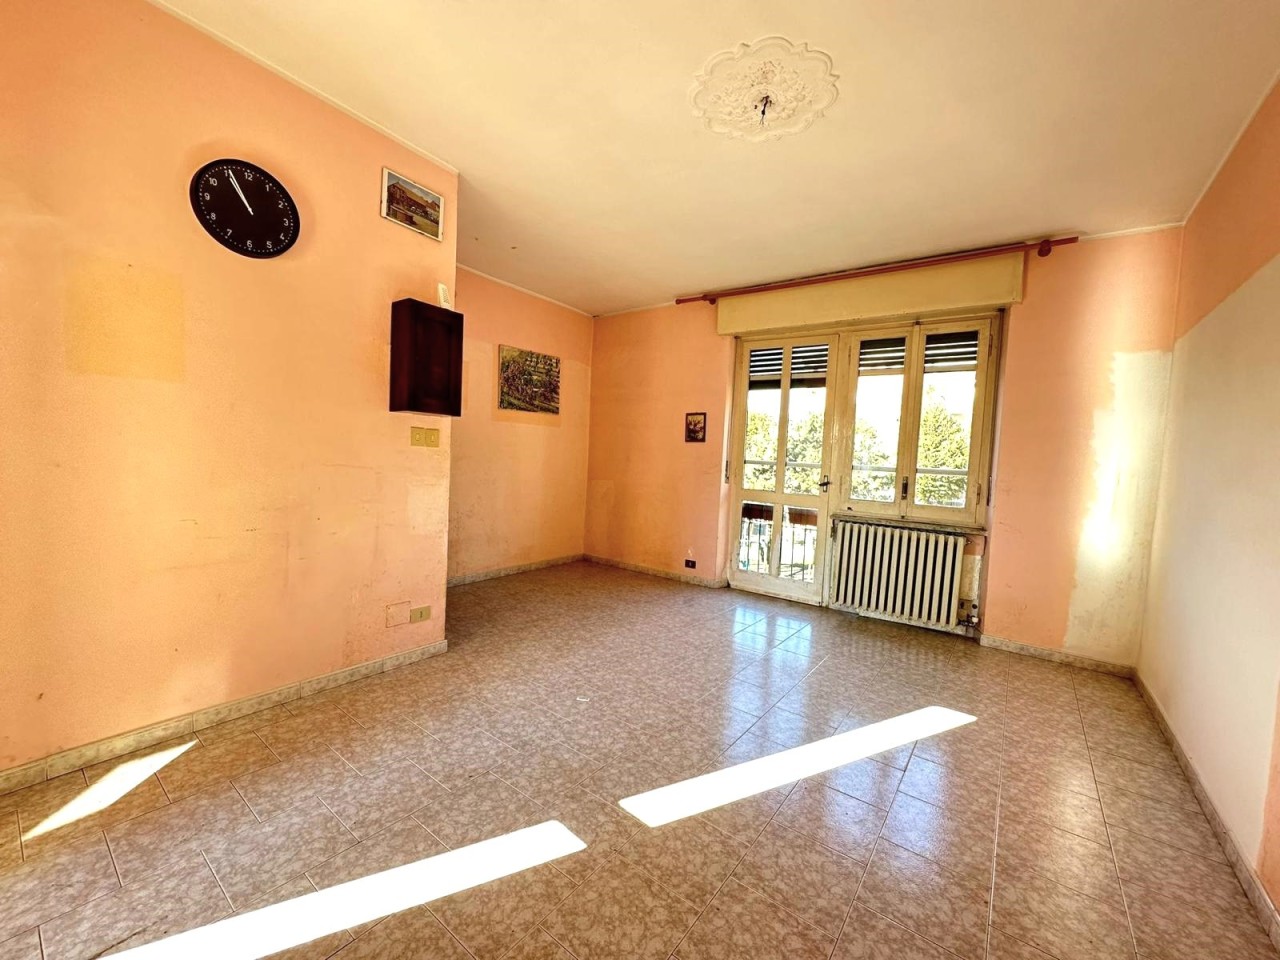 Appartamento in affitto a Ciriè, 3 locali, prezzo € 450 | PortaleAgenzieImmobiliari.it